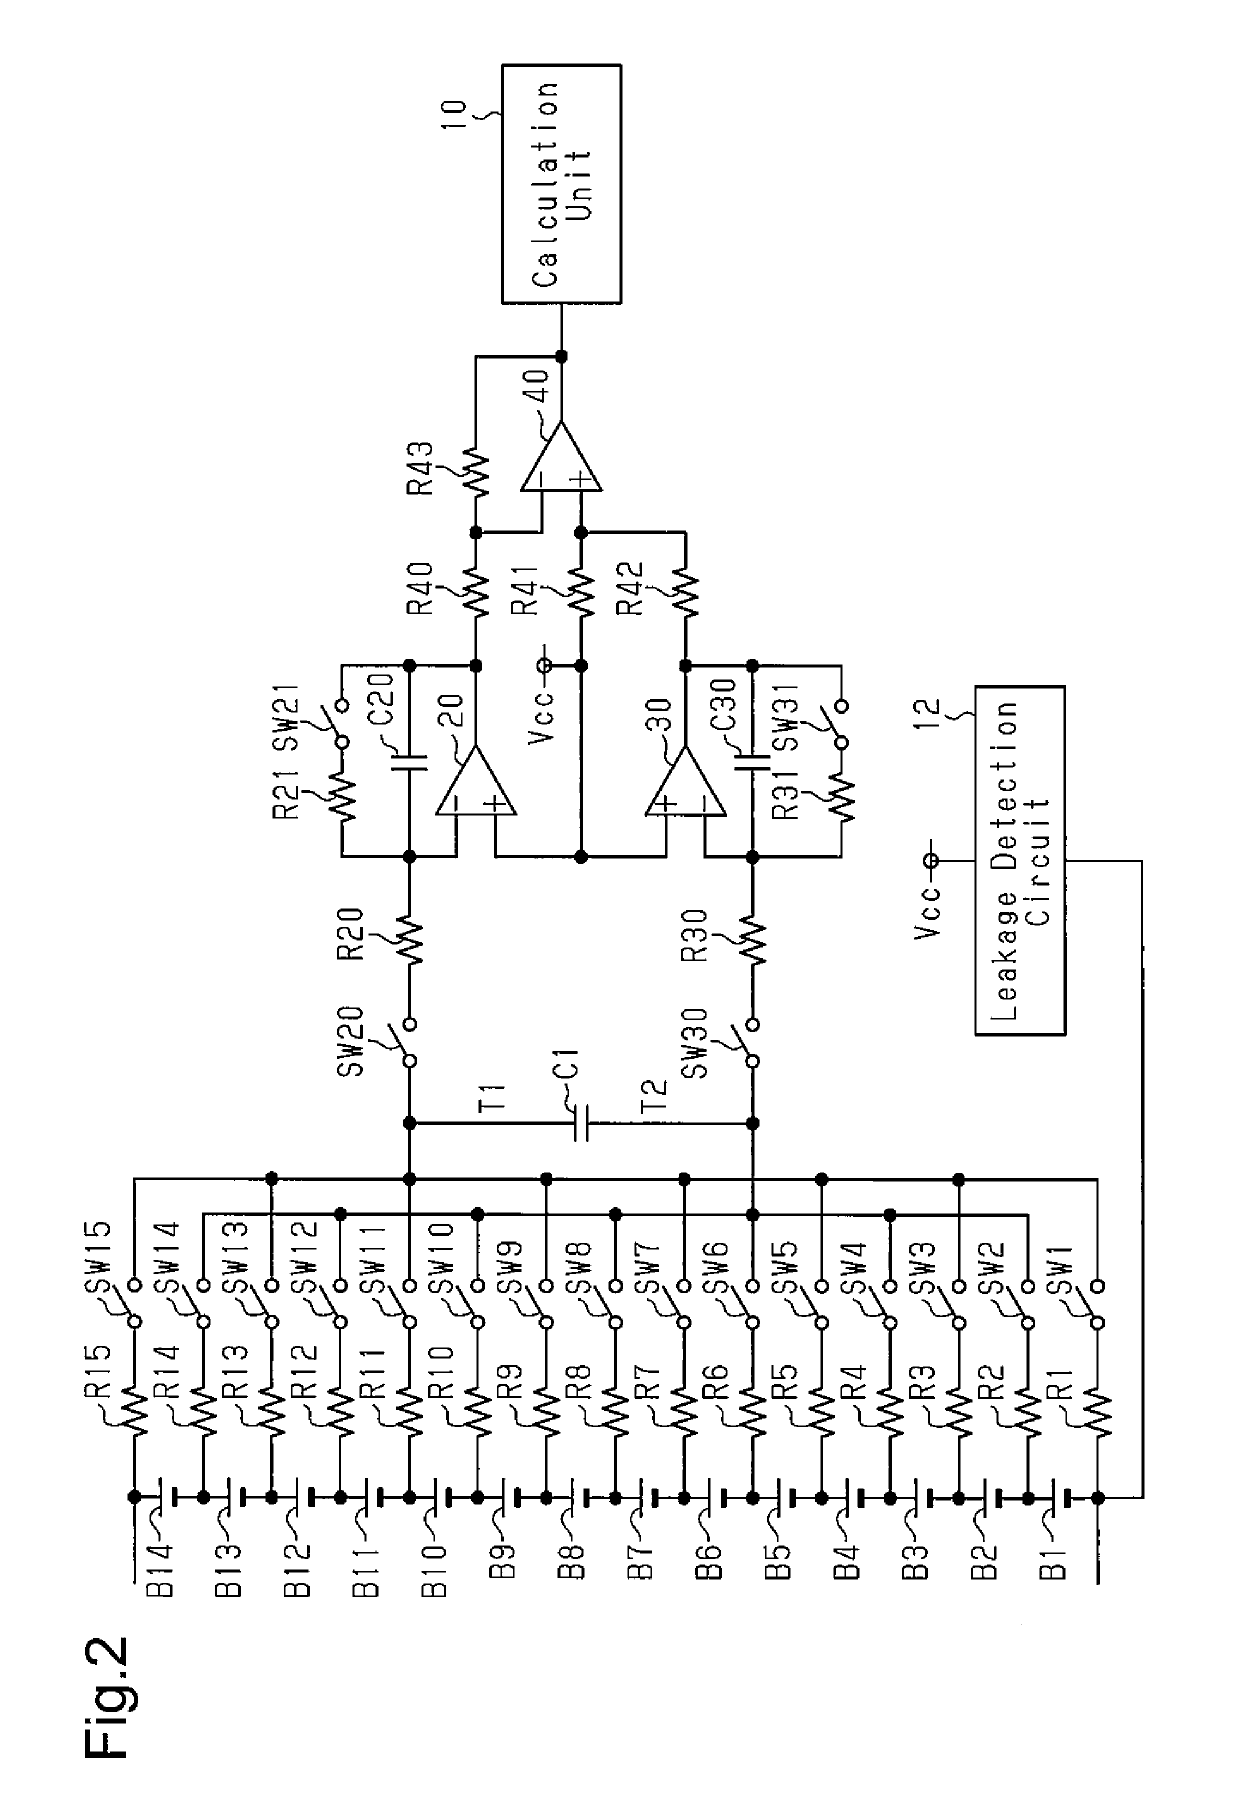 Battery voltage measurement circuit